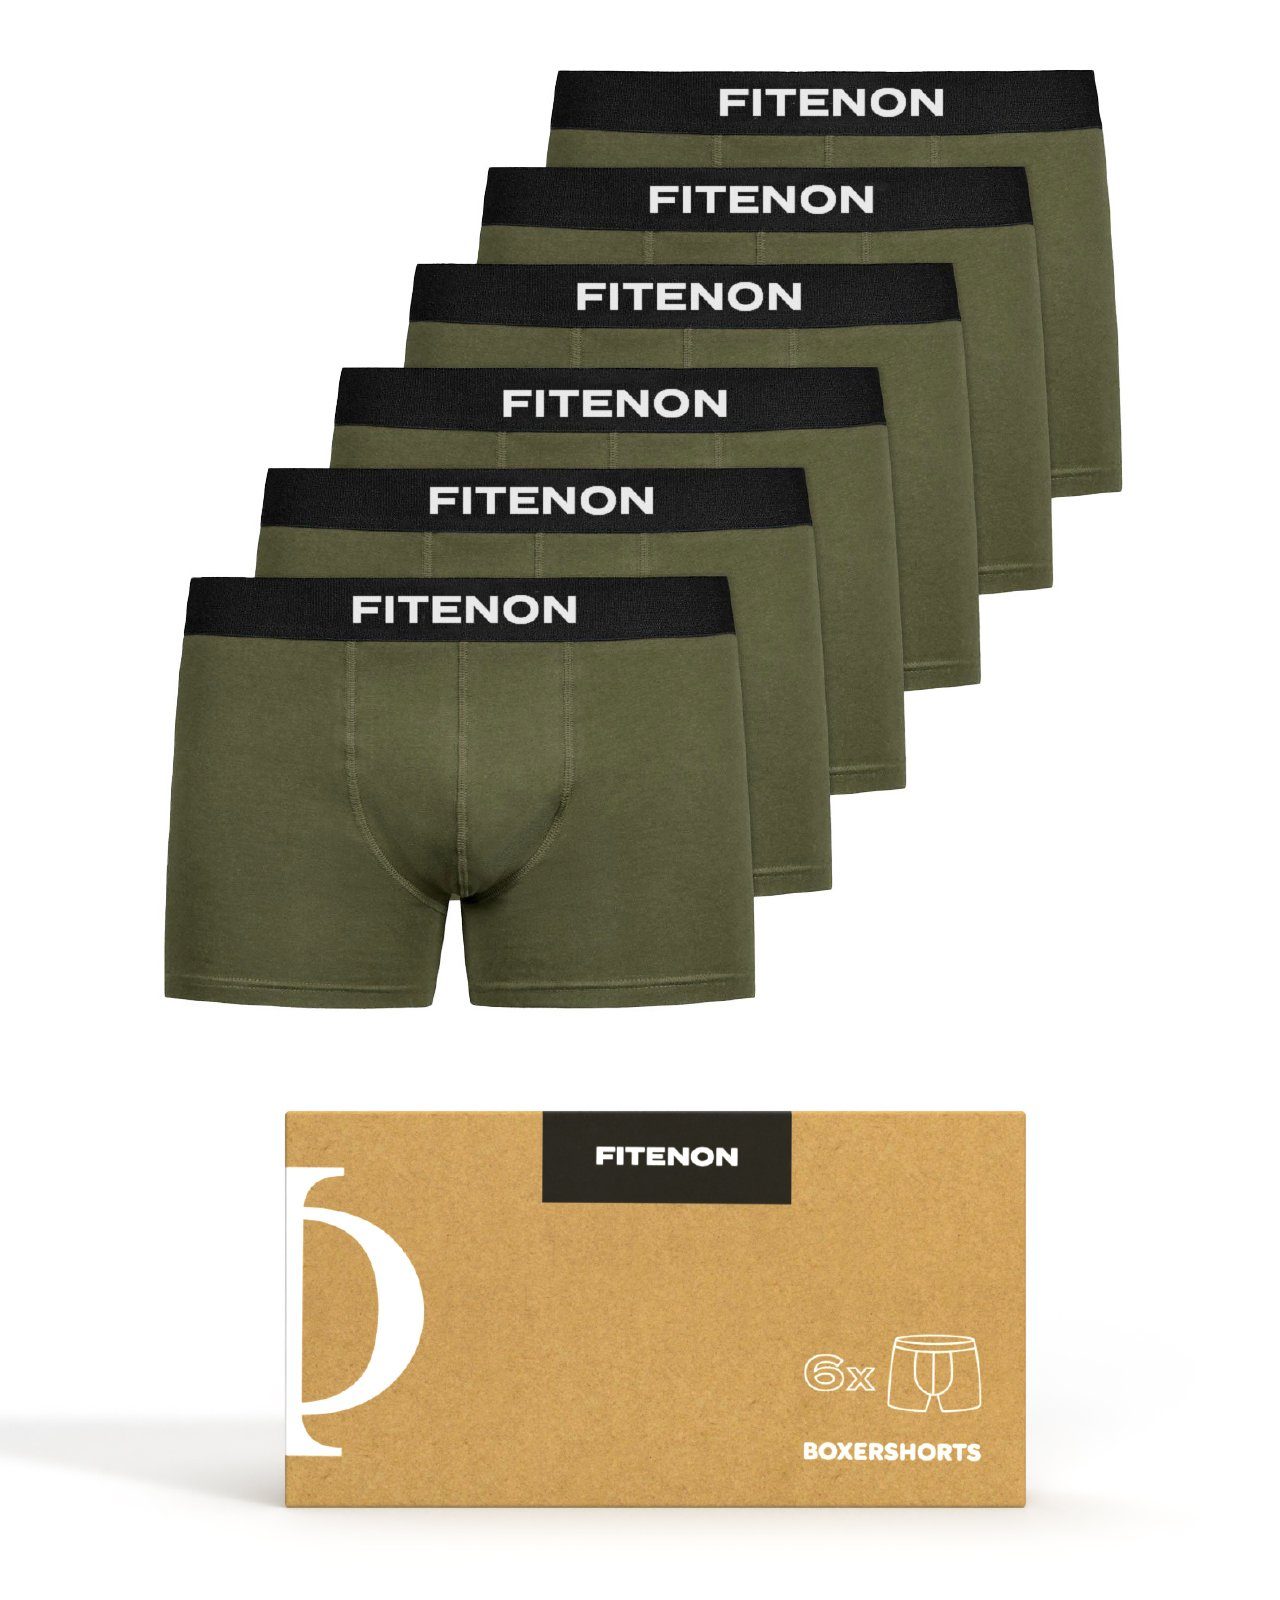 FITENON Boxershorts Herren Baumwolle Unterwäsche, Set) Zettel, Unterhosen, er kratzenden 6x (6 Olive Logo-Elastikbund mit ohne